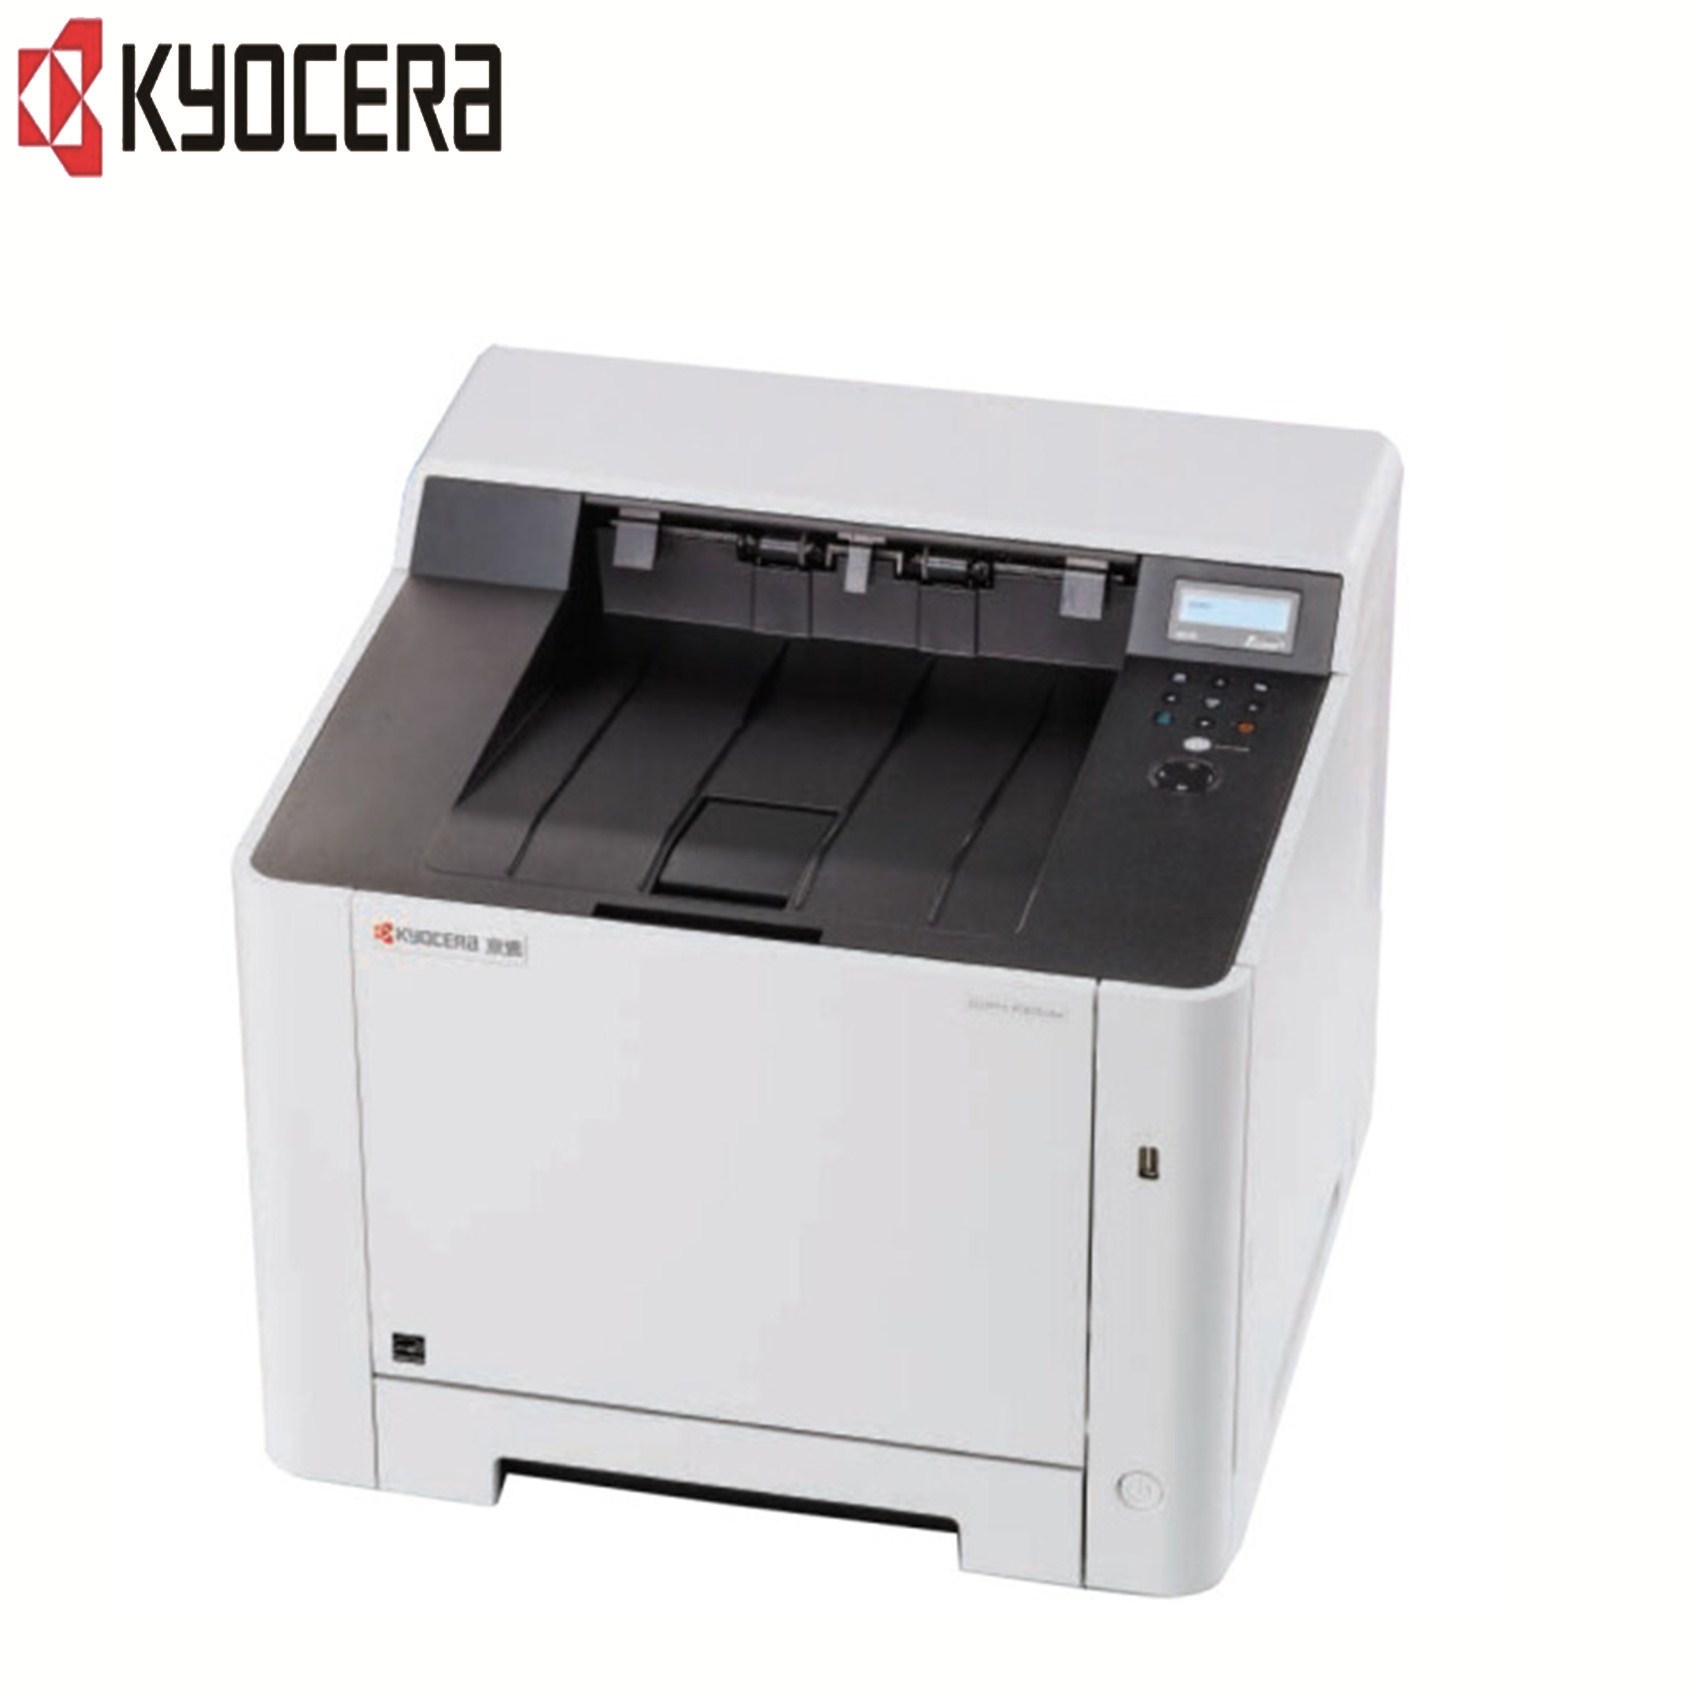 京瓷(kyocera)ECOSYS P5021cdn 彩色激光打印机